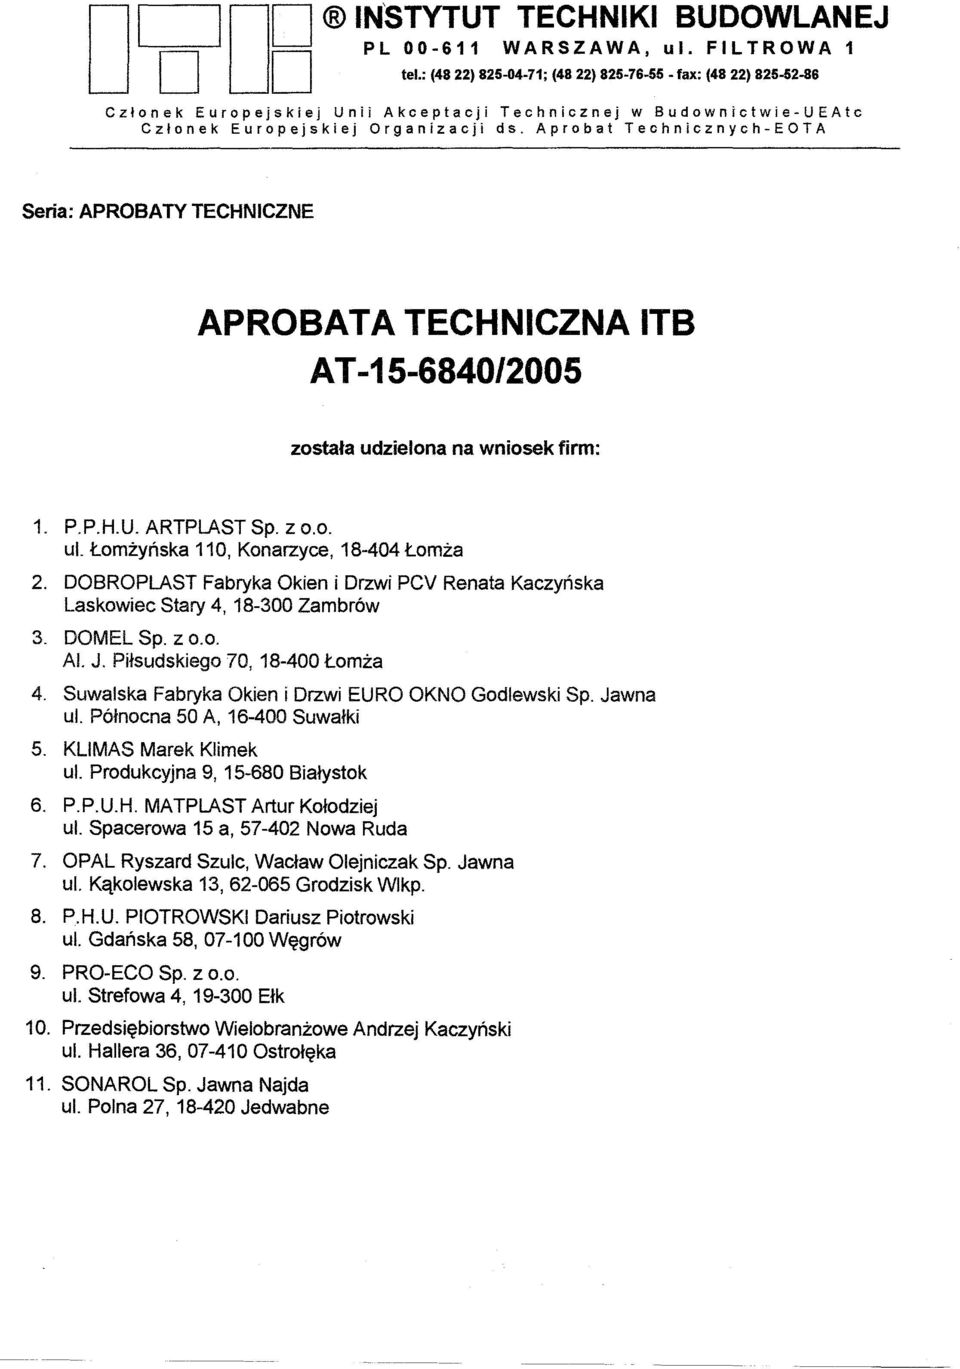 Aprobat Technicznych-EOTA Sena: APROBATY TECHNICZNE APROBATA TECHNICZNA AT -15-6840/2005 ITB zostala udzielona na wniosek firm: 1. P.P.H.U. ARTPLAST Sp. z 0.0. ul.